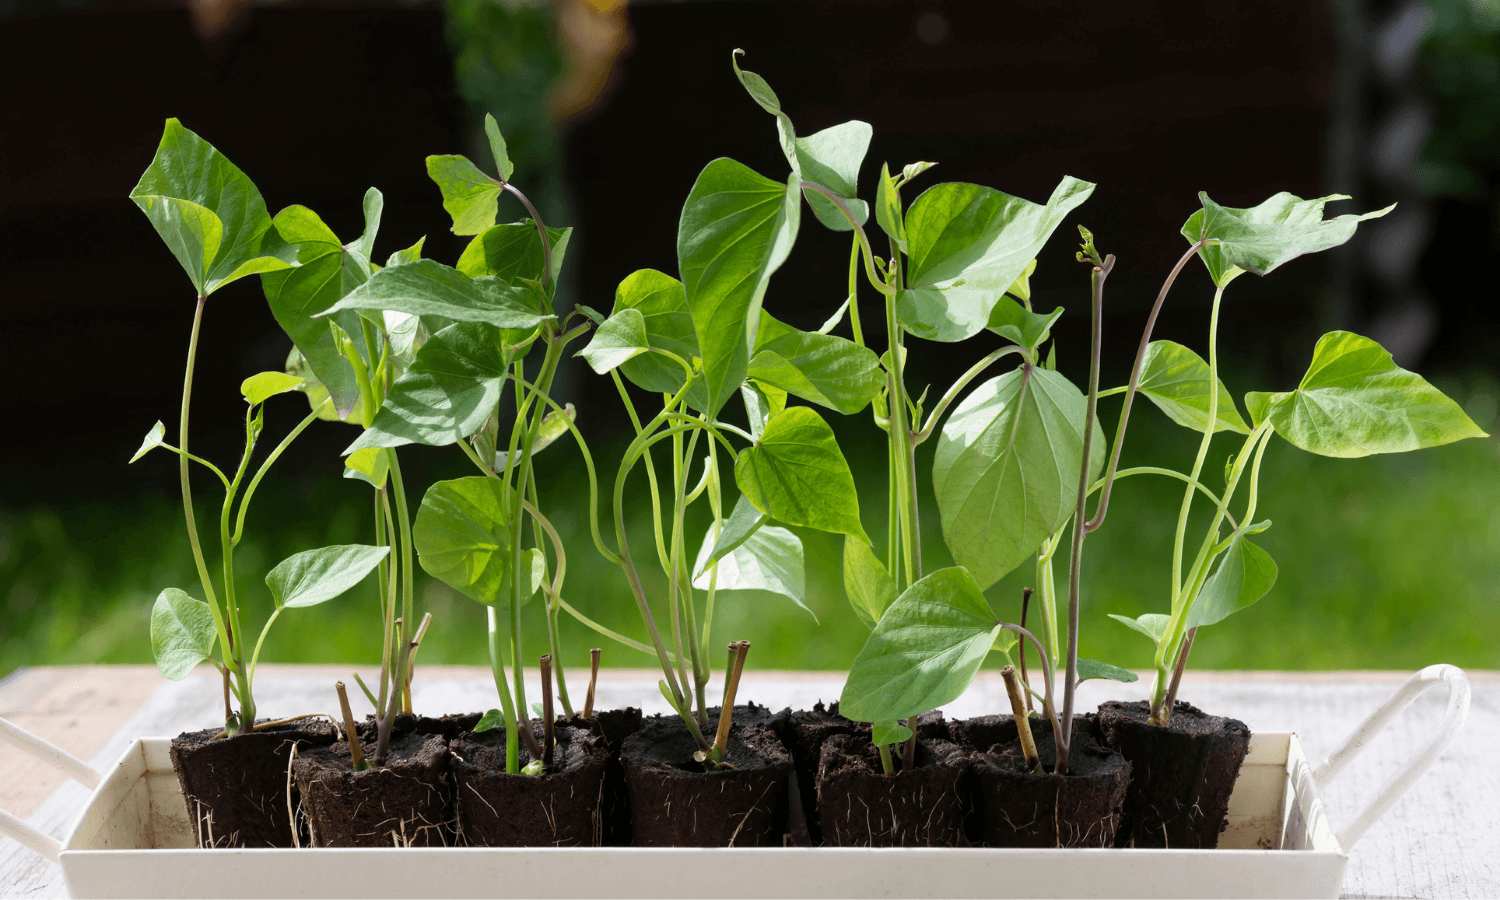 Werden Süßkartoffeln im Februar vorgezogen, können sie im April oder Mai ins Gemüsebeet gepflanzt werden. Auf dem Bild sieht man die Triebe und Blätter der jungen Pflanzen. © iStock.com